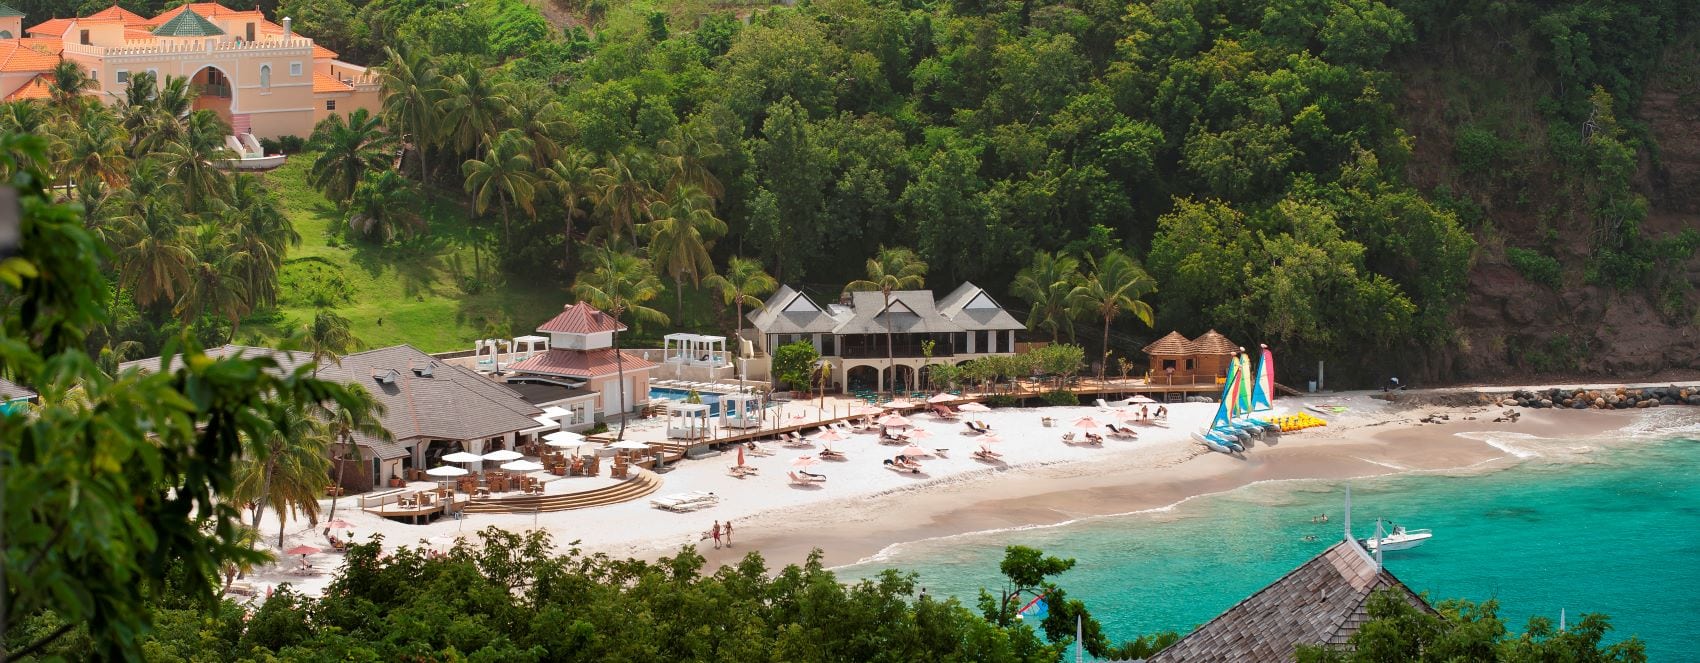 Blick auf BodyHoliday Hotel und Strand, St. Lucia 